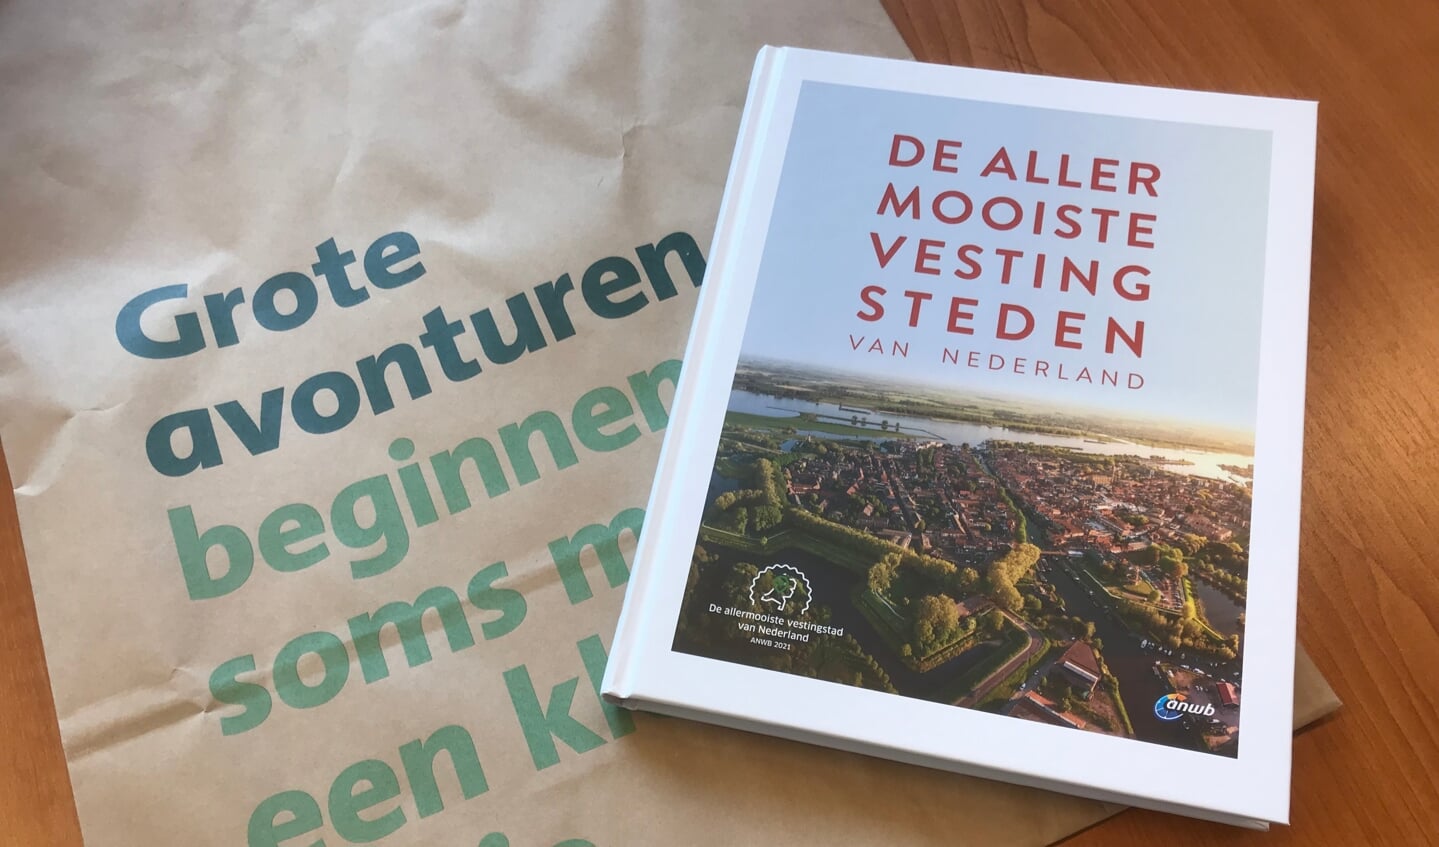 De vesting Gorinchem prijkt op de voorpagina van het boek over de vijftig mooiste vestingsteden in Nederland